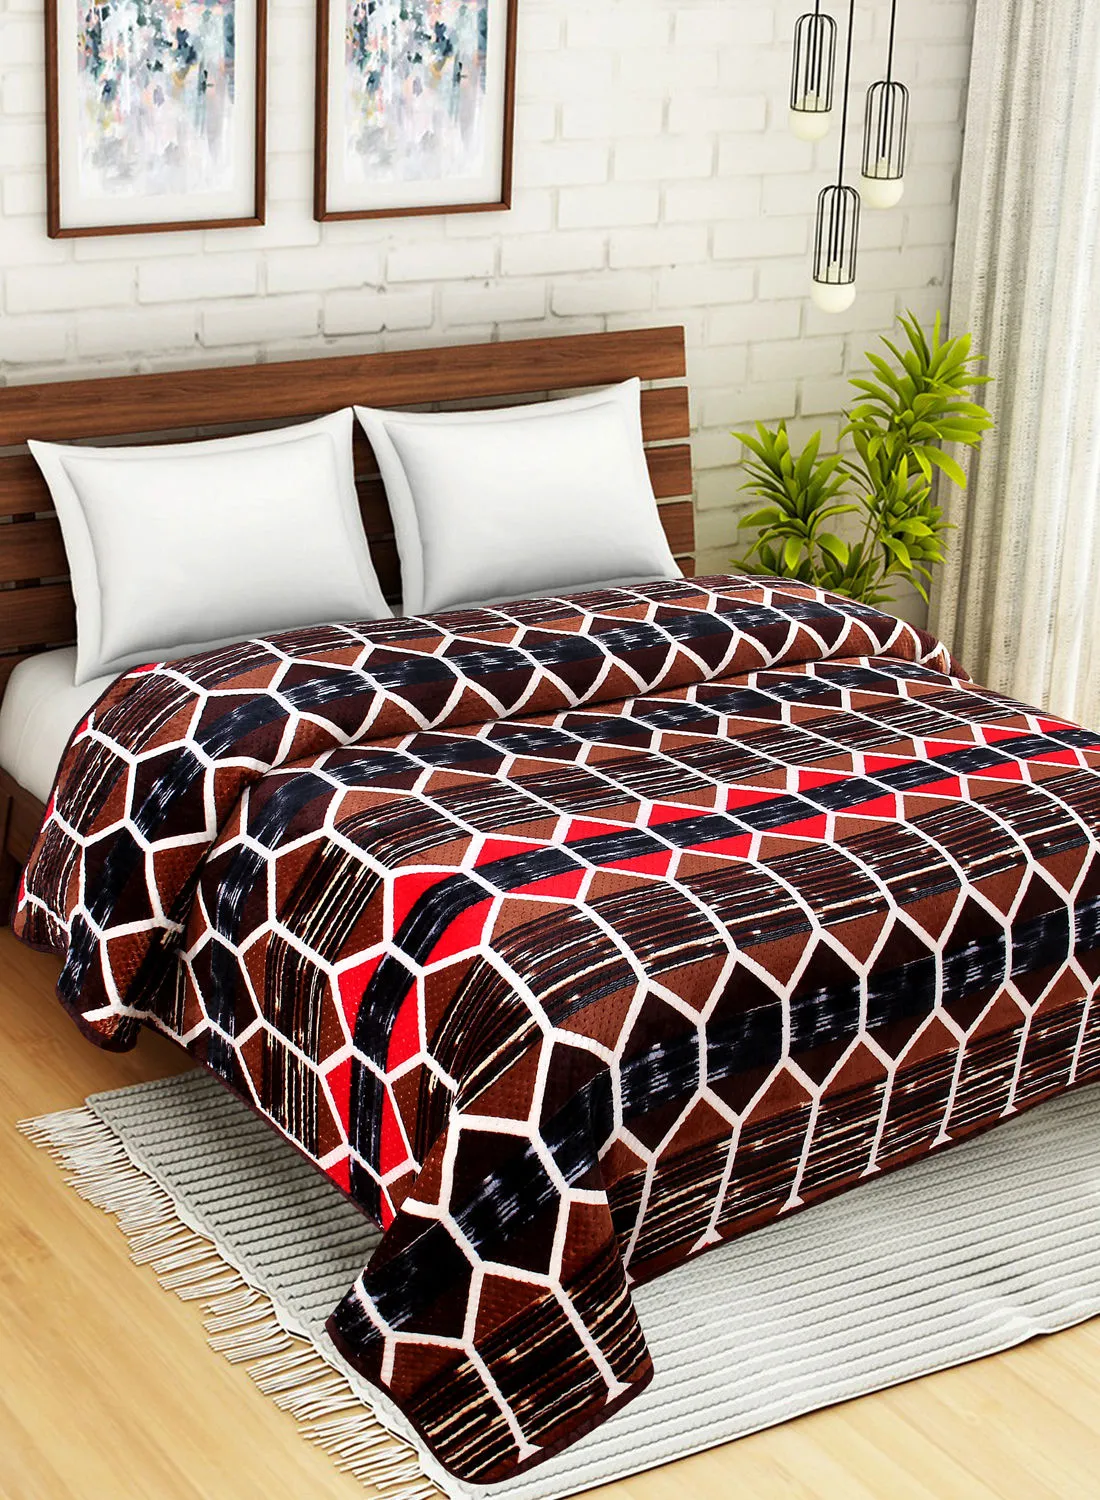 Hometown Light Blanket - 160X220 Cm - Geometric Patterned Brown 100% Poyester Ultra Plush For Sofa Or Bedroom